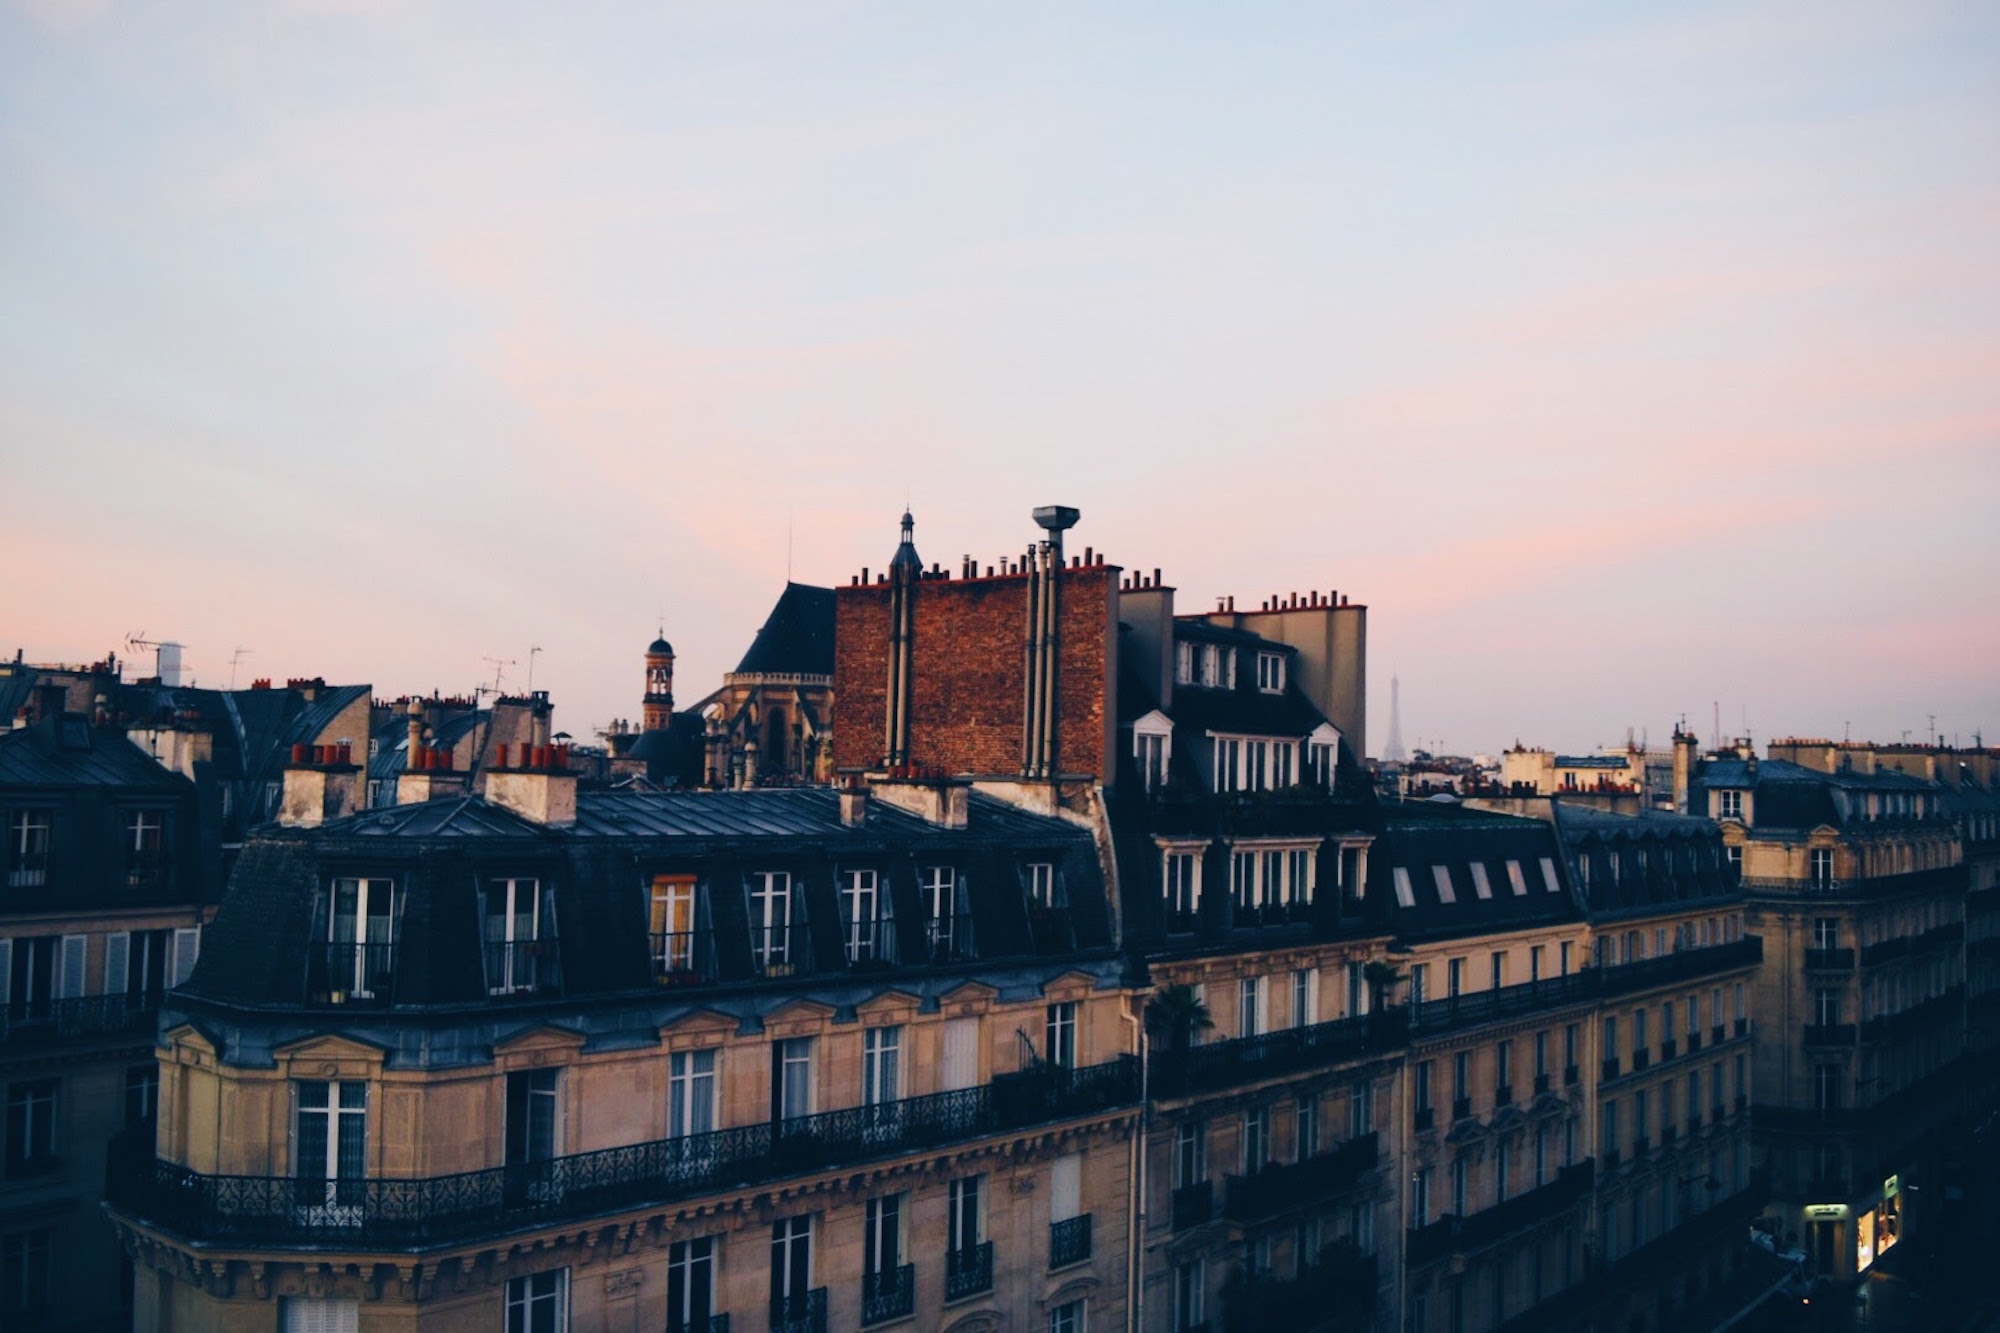 Parisian Rooftops at Dusk